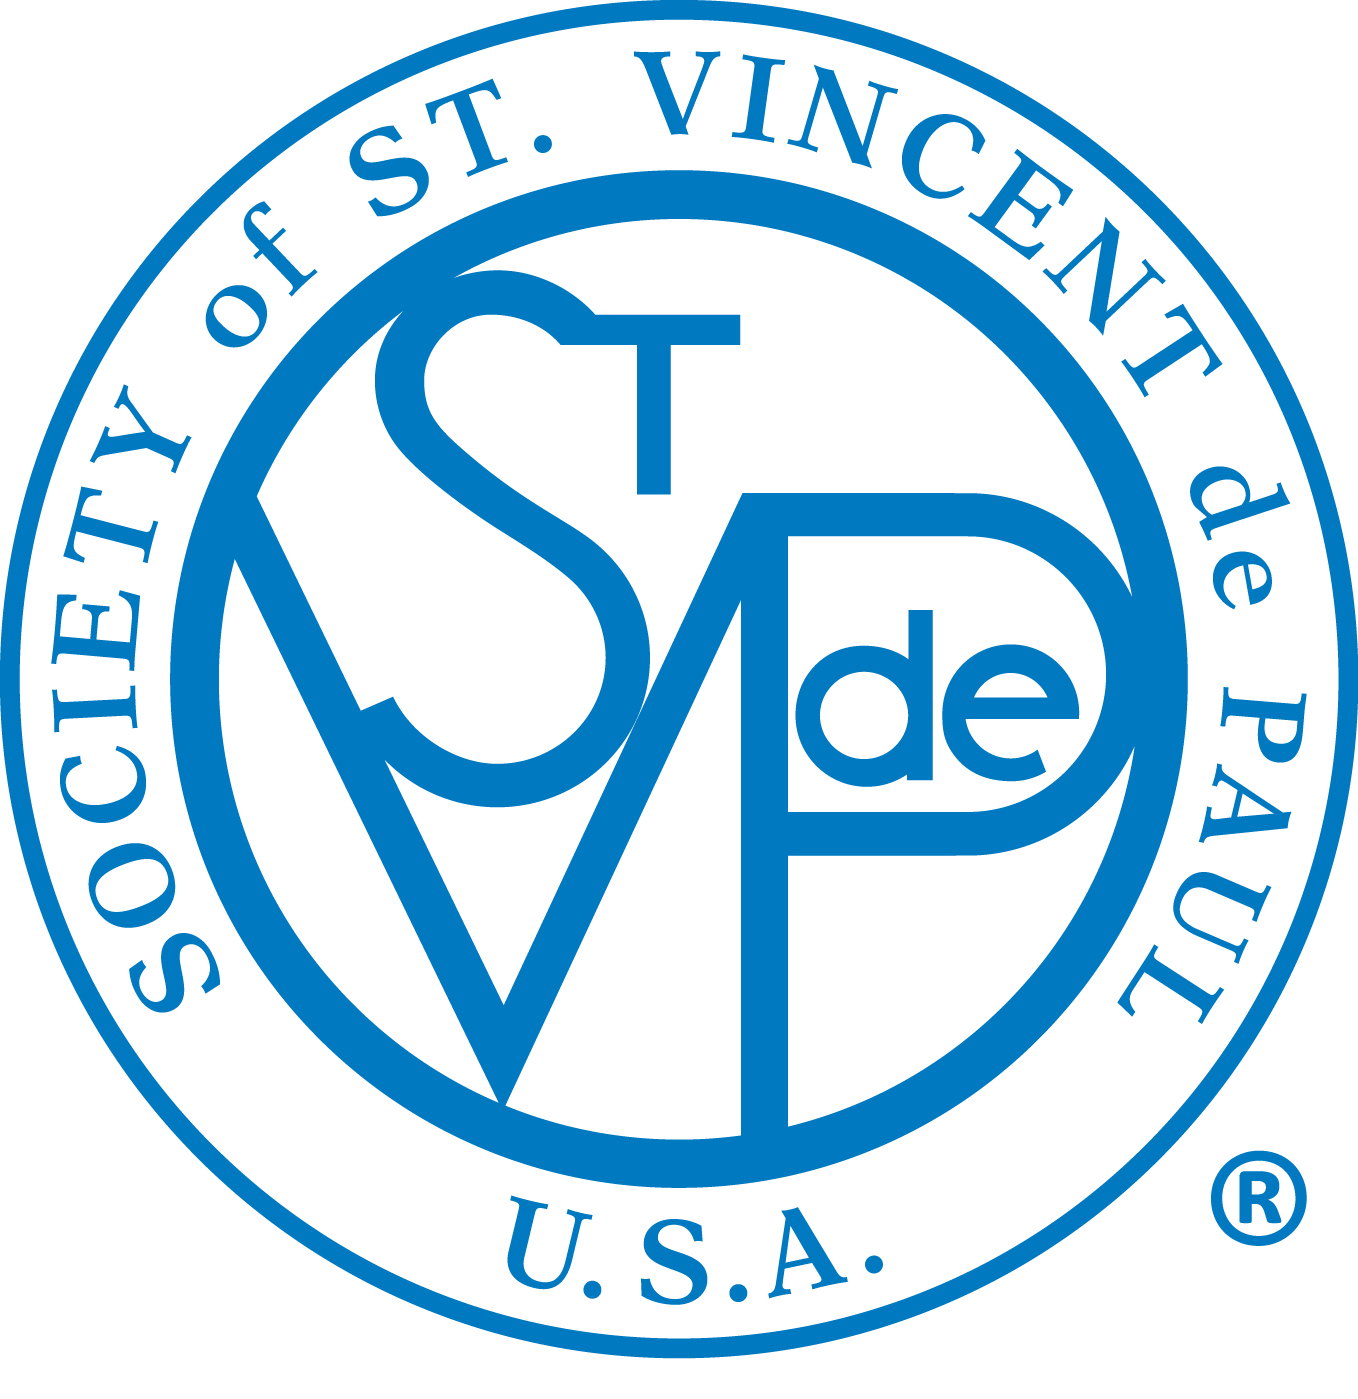 Saint Vincent de Paul Society